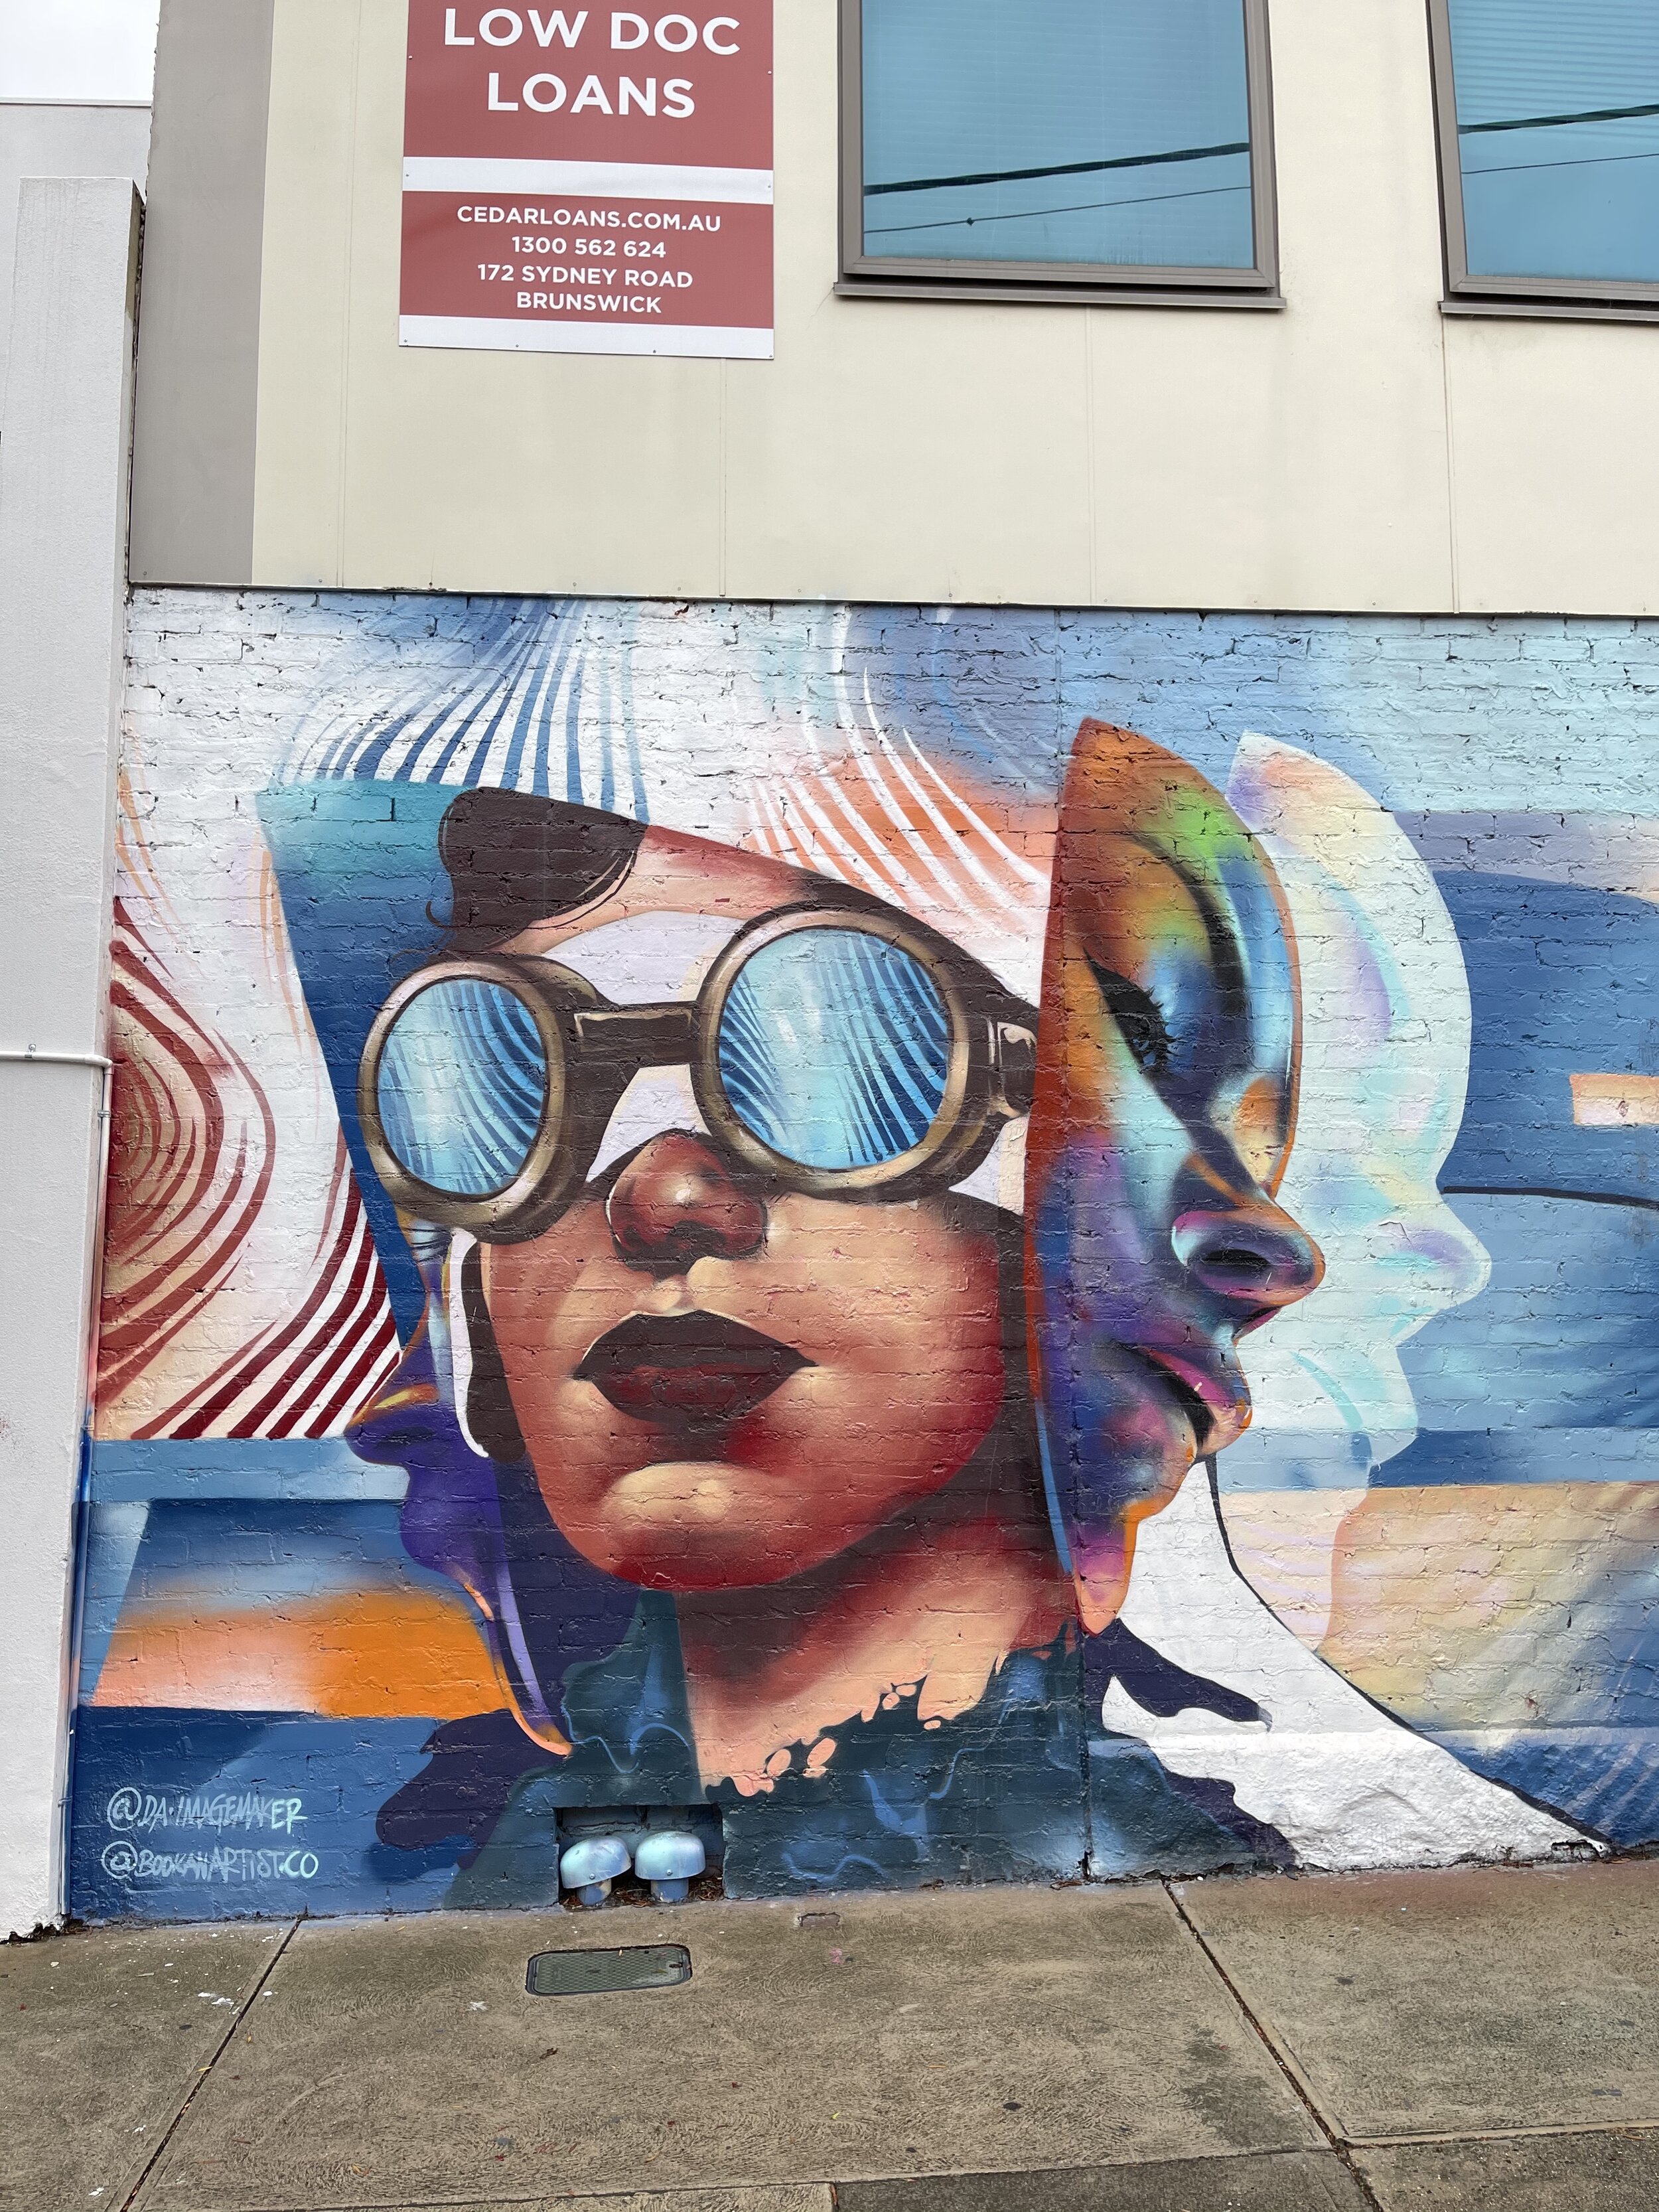 Cosmic girl graffiti - Melbourne - Victoria - Australia